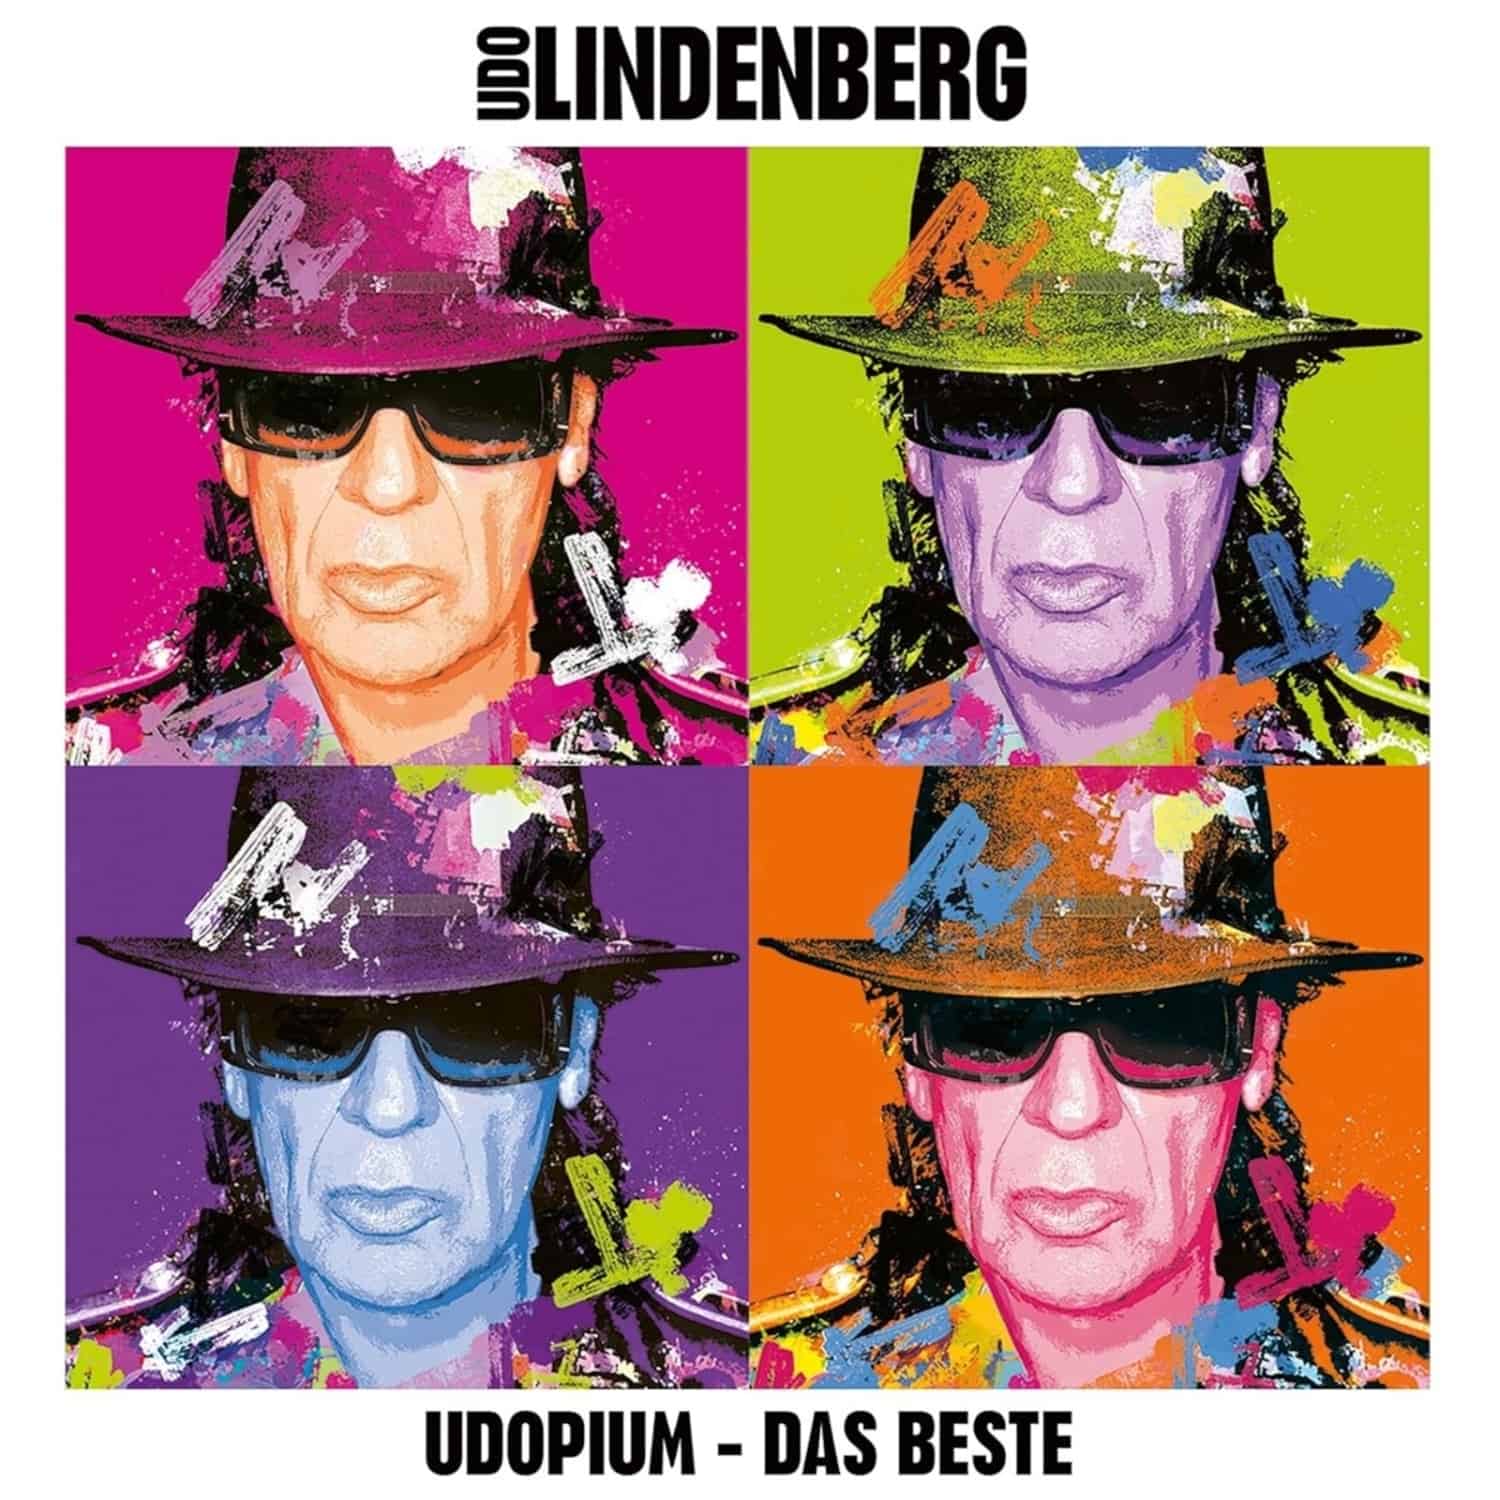 Udo Lindenberg - UDOPIUM - DAS BESTE 